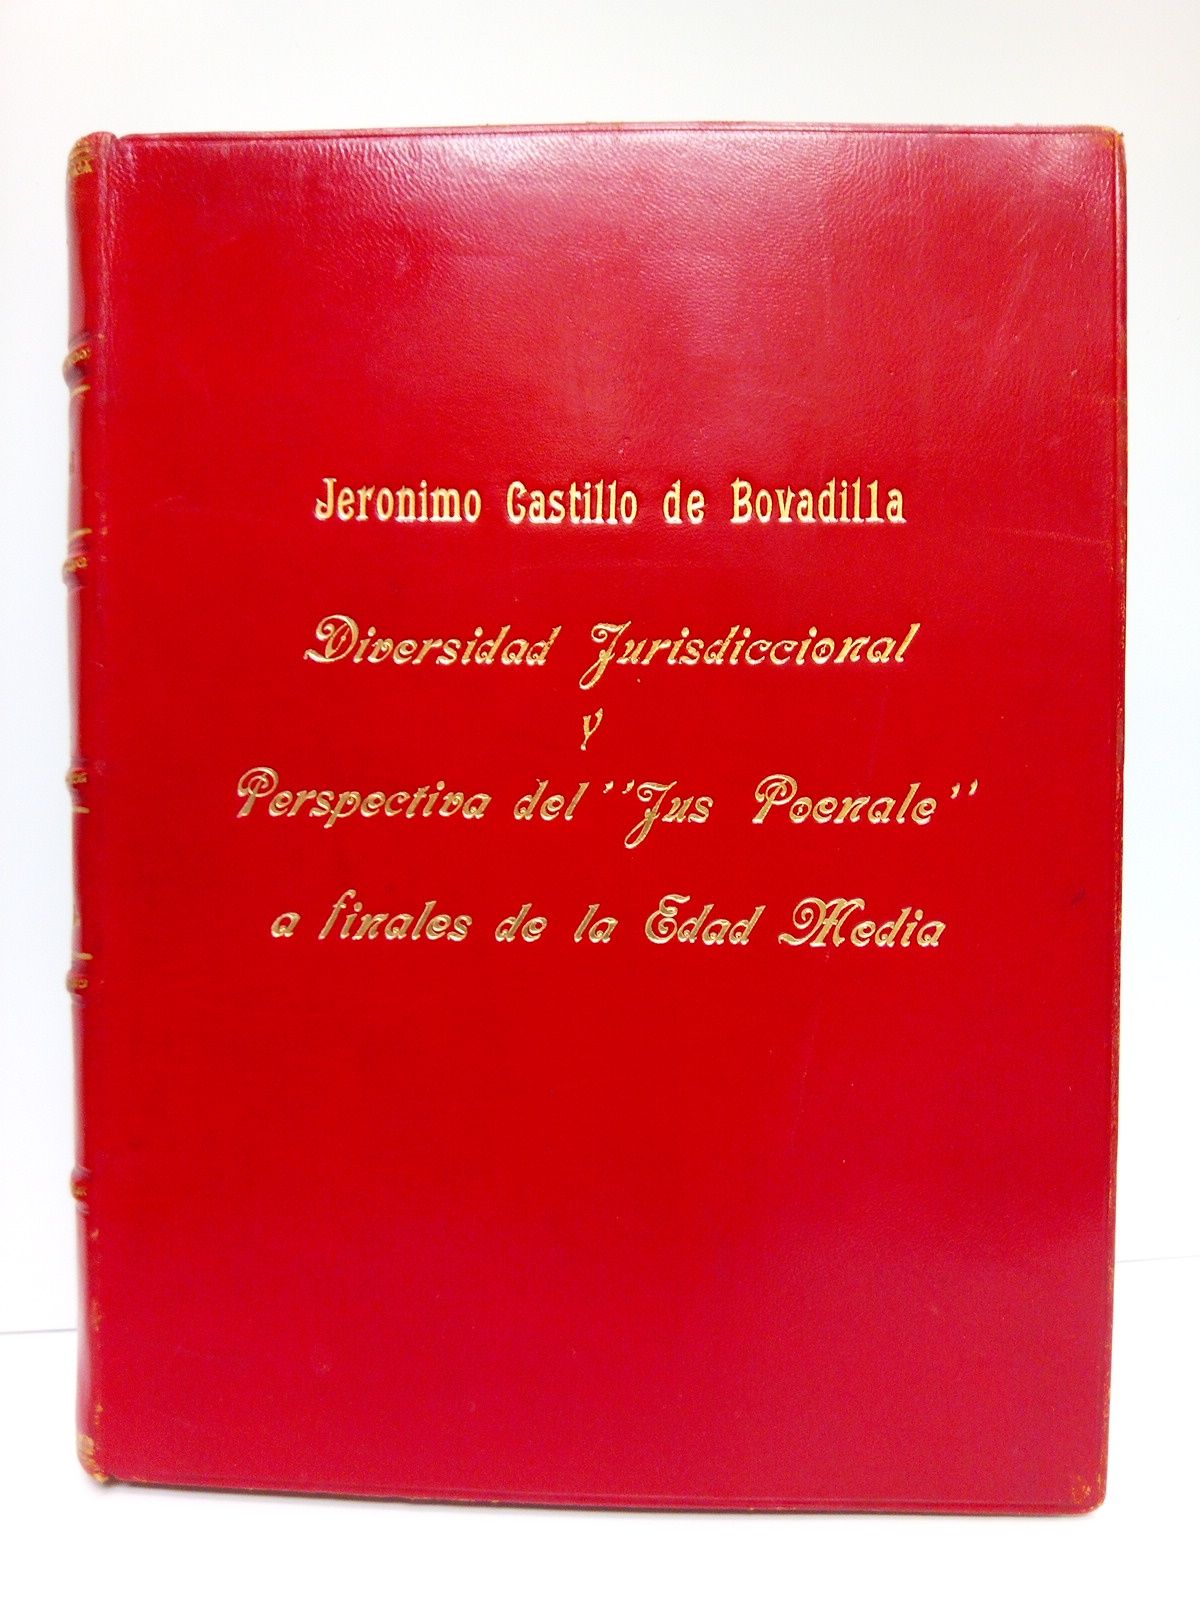 FENOLLOSA, Vicente Enrique - Jernimo Castillo de Bovadilla: 